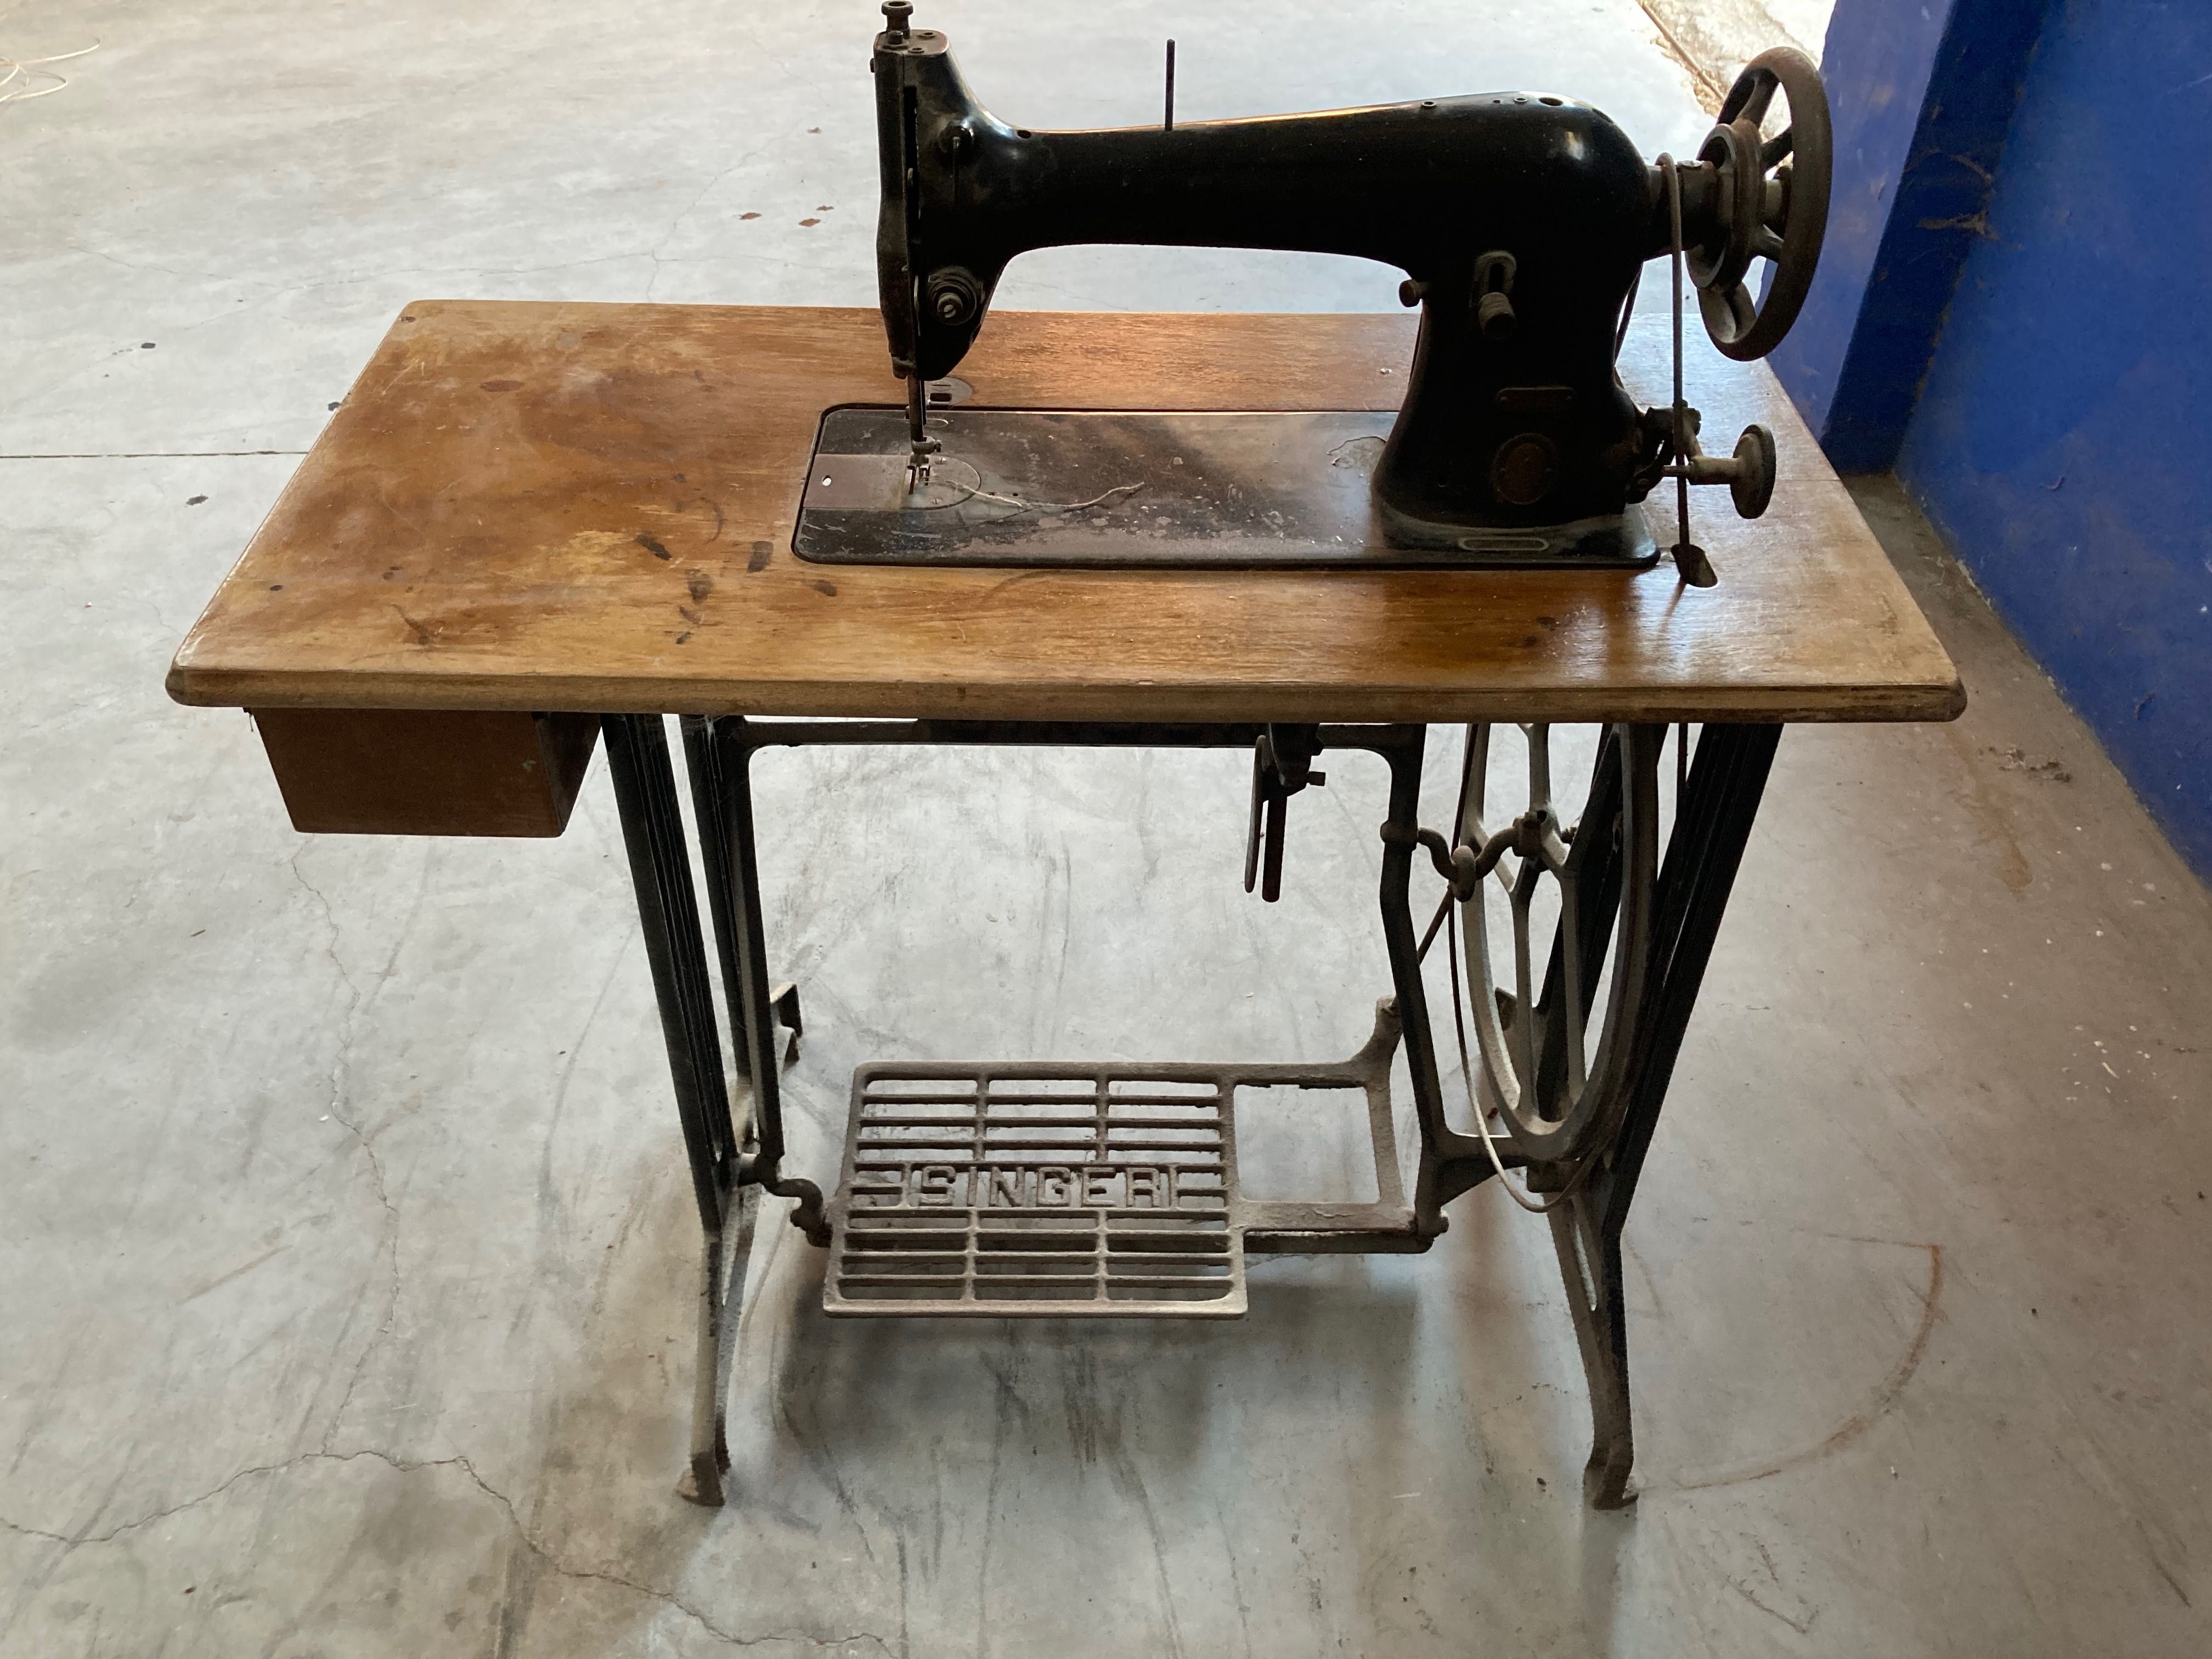 Máquina antiga de costura